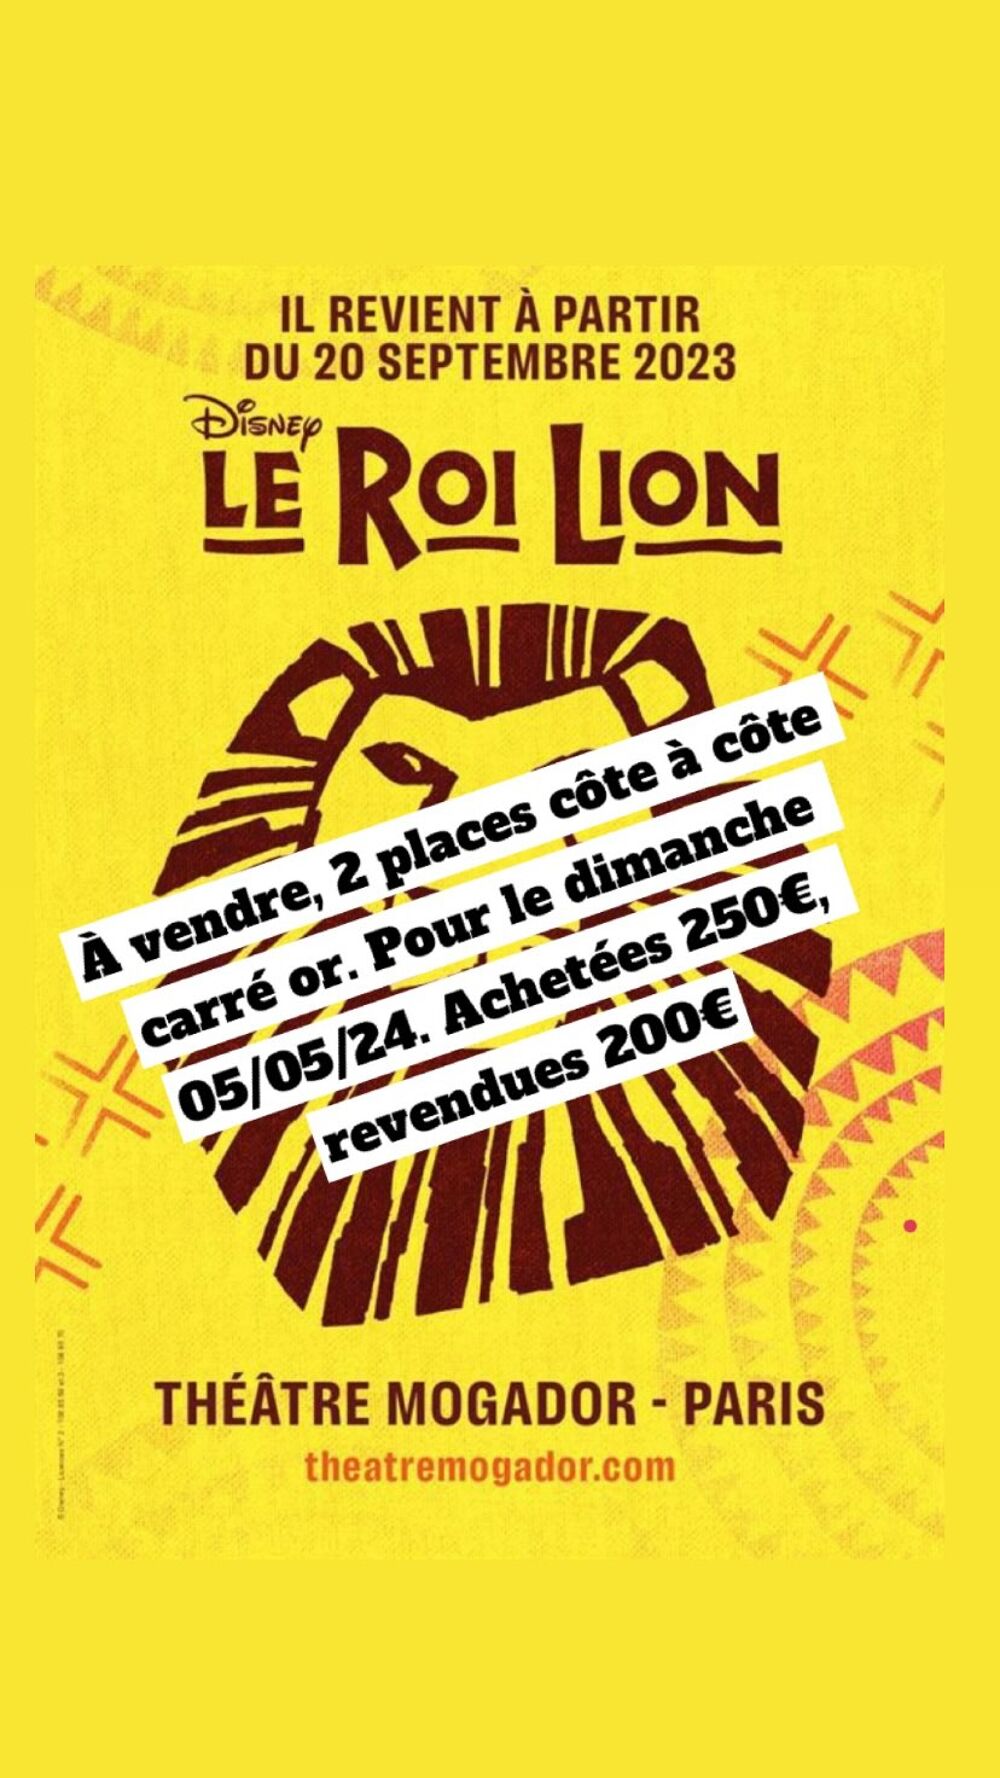 Deux places carr&eacute; OR pour le spectacle LE ROI LION 05/05/24 Billetterie